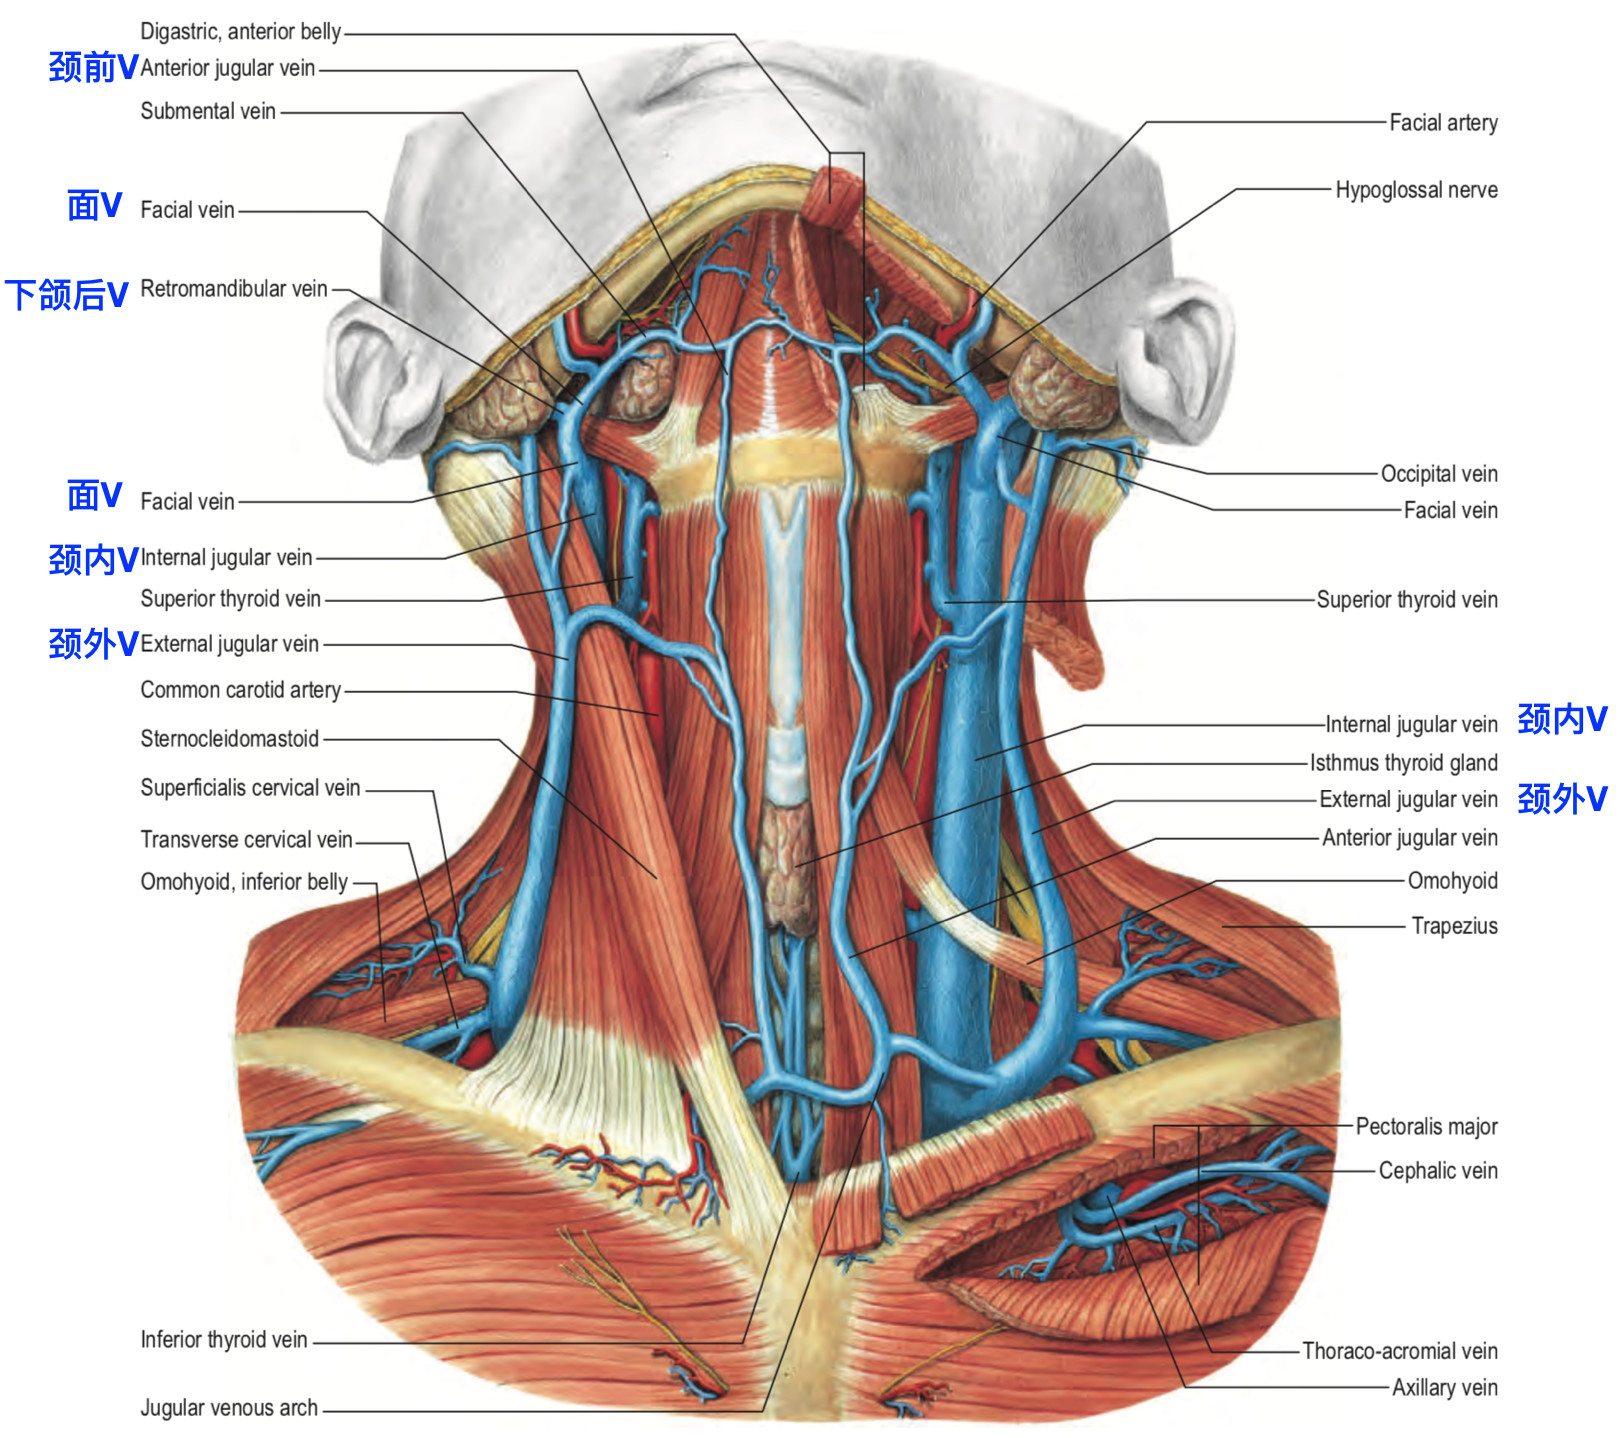 脑血管解剖学习笔记第25期颈内静脉大体解剖